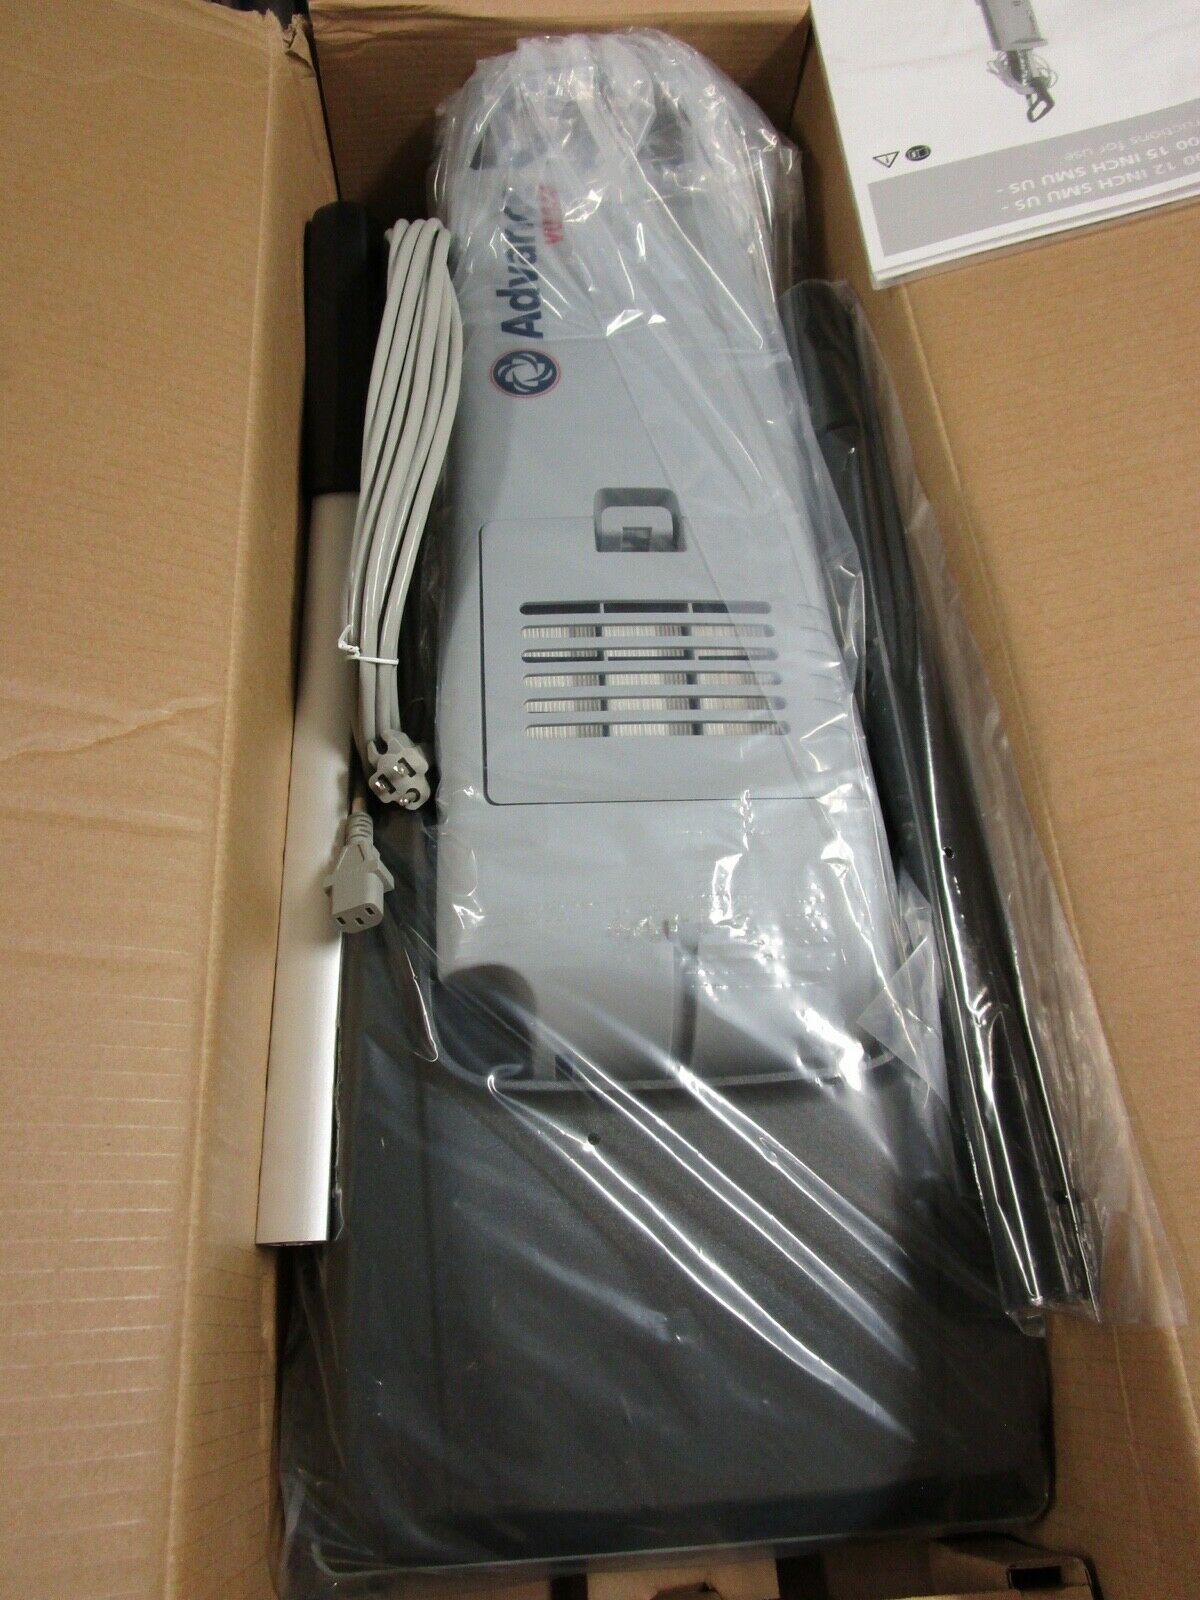 Advance Vu500 12" Upright Vacuum Cleaner #107404753 - New In Box